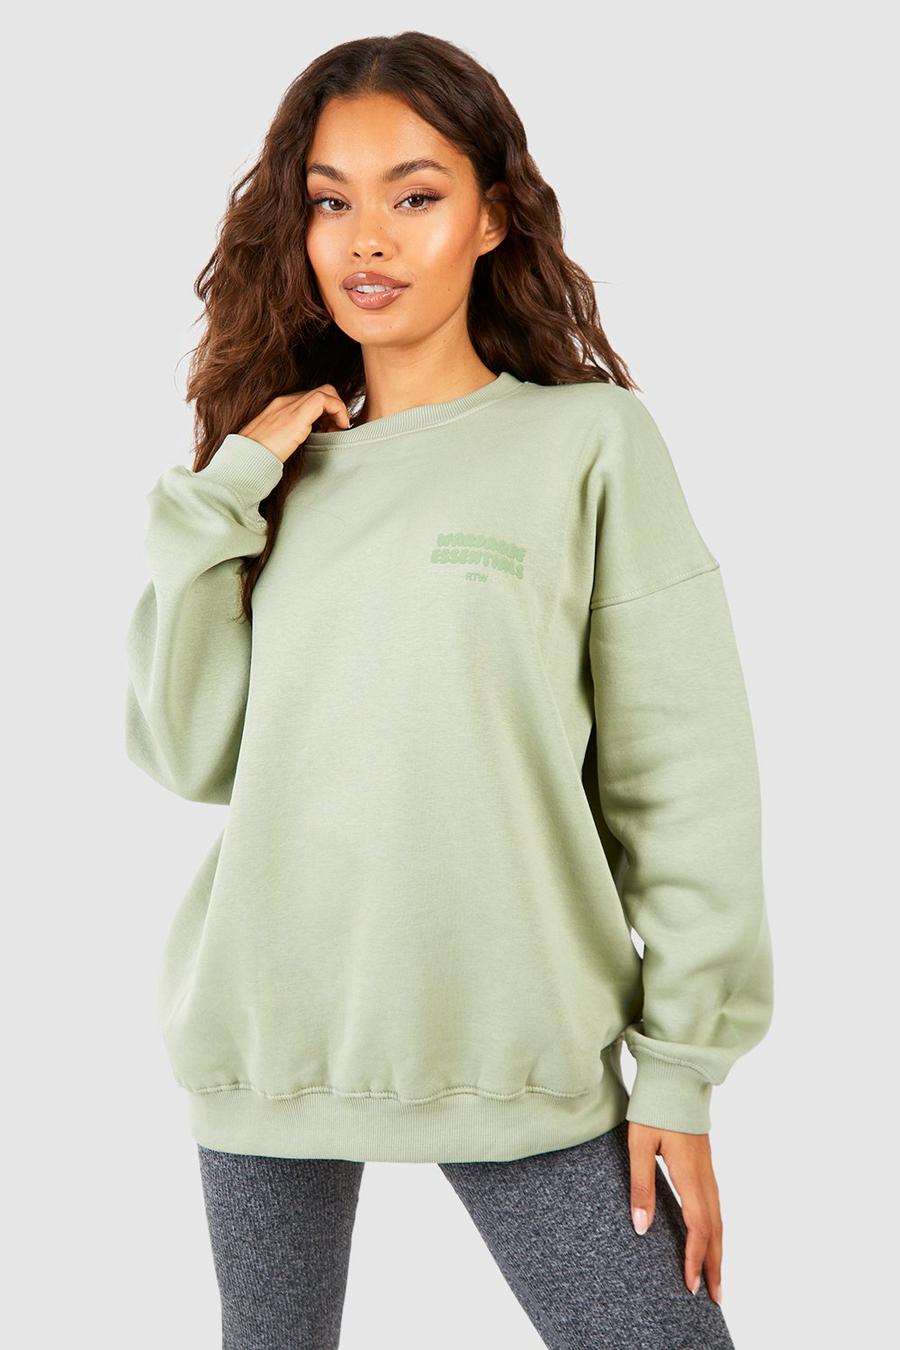 Sage Wardrobe Essentials Oversize sweatshirt